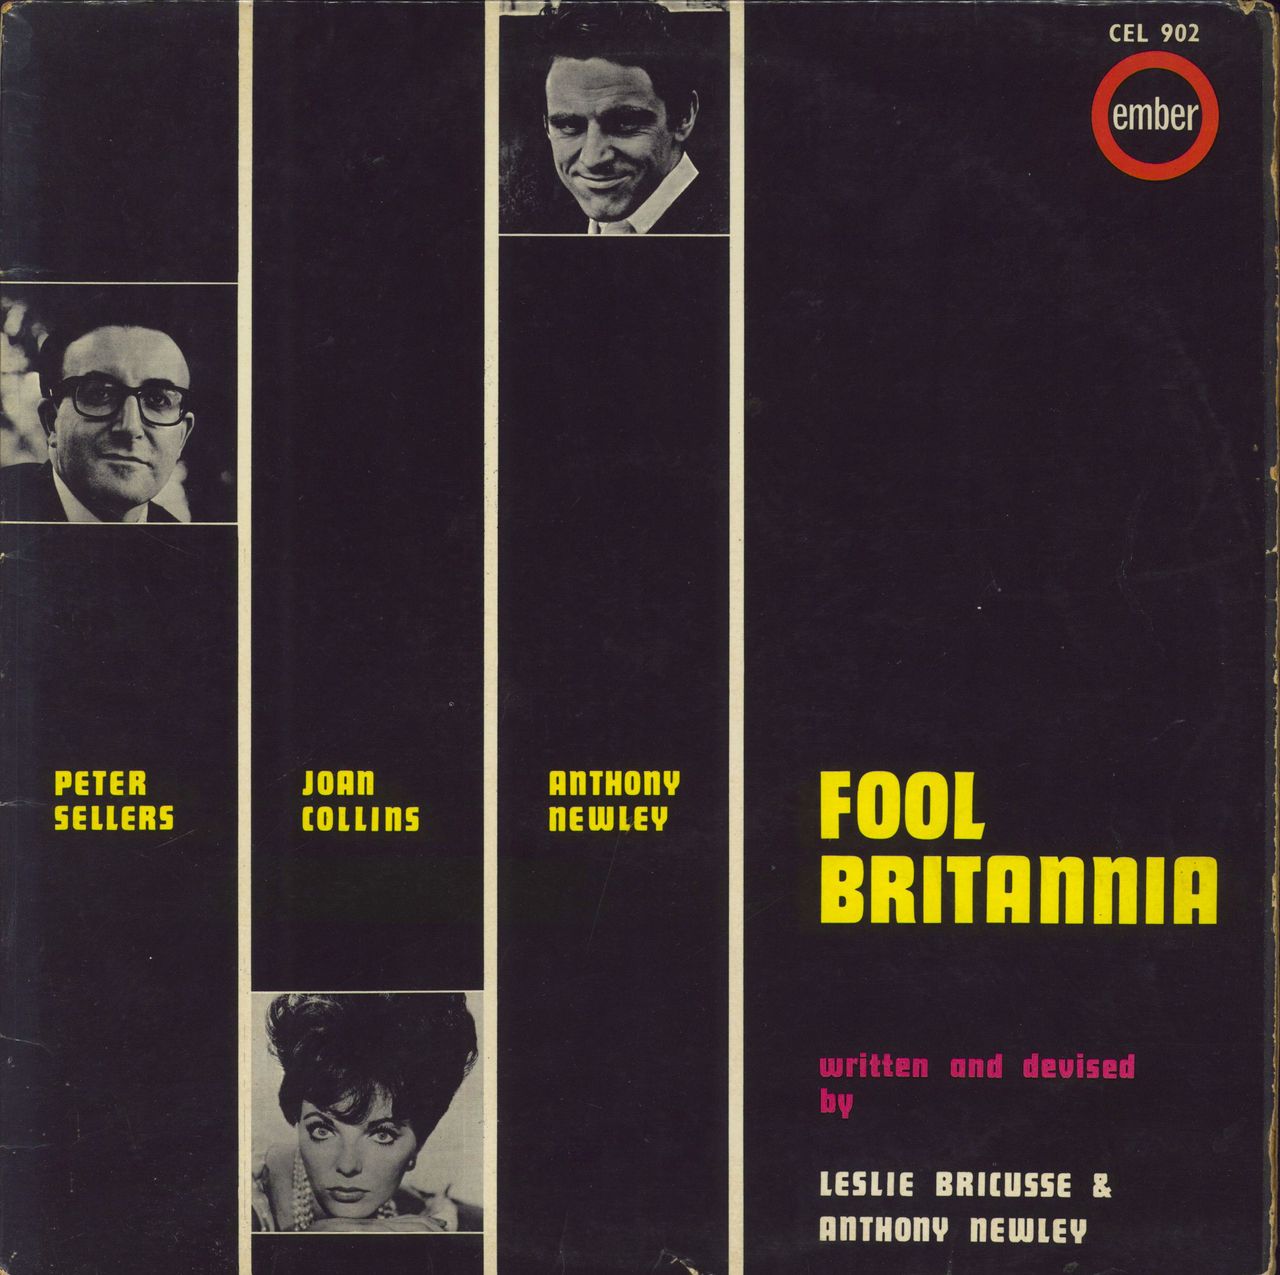 Peter Sellers Fool Britannia UK vinyl LP album (LP record) CEL902